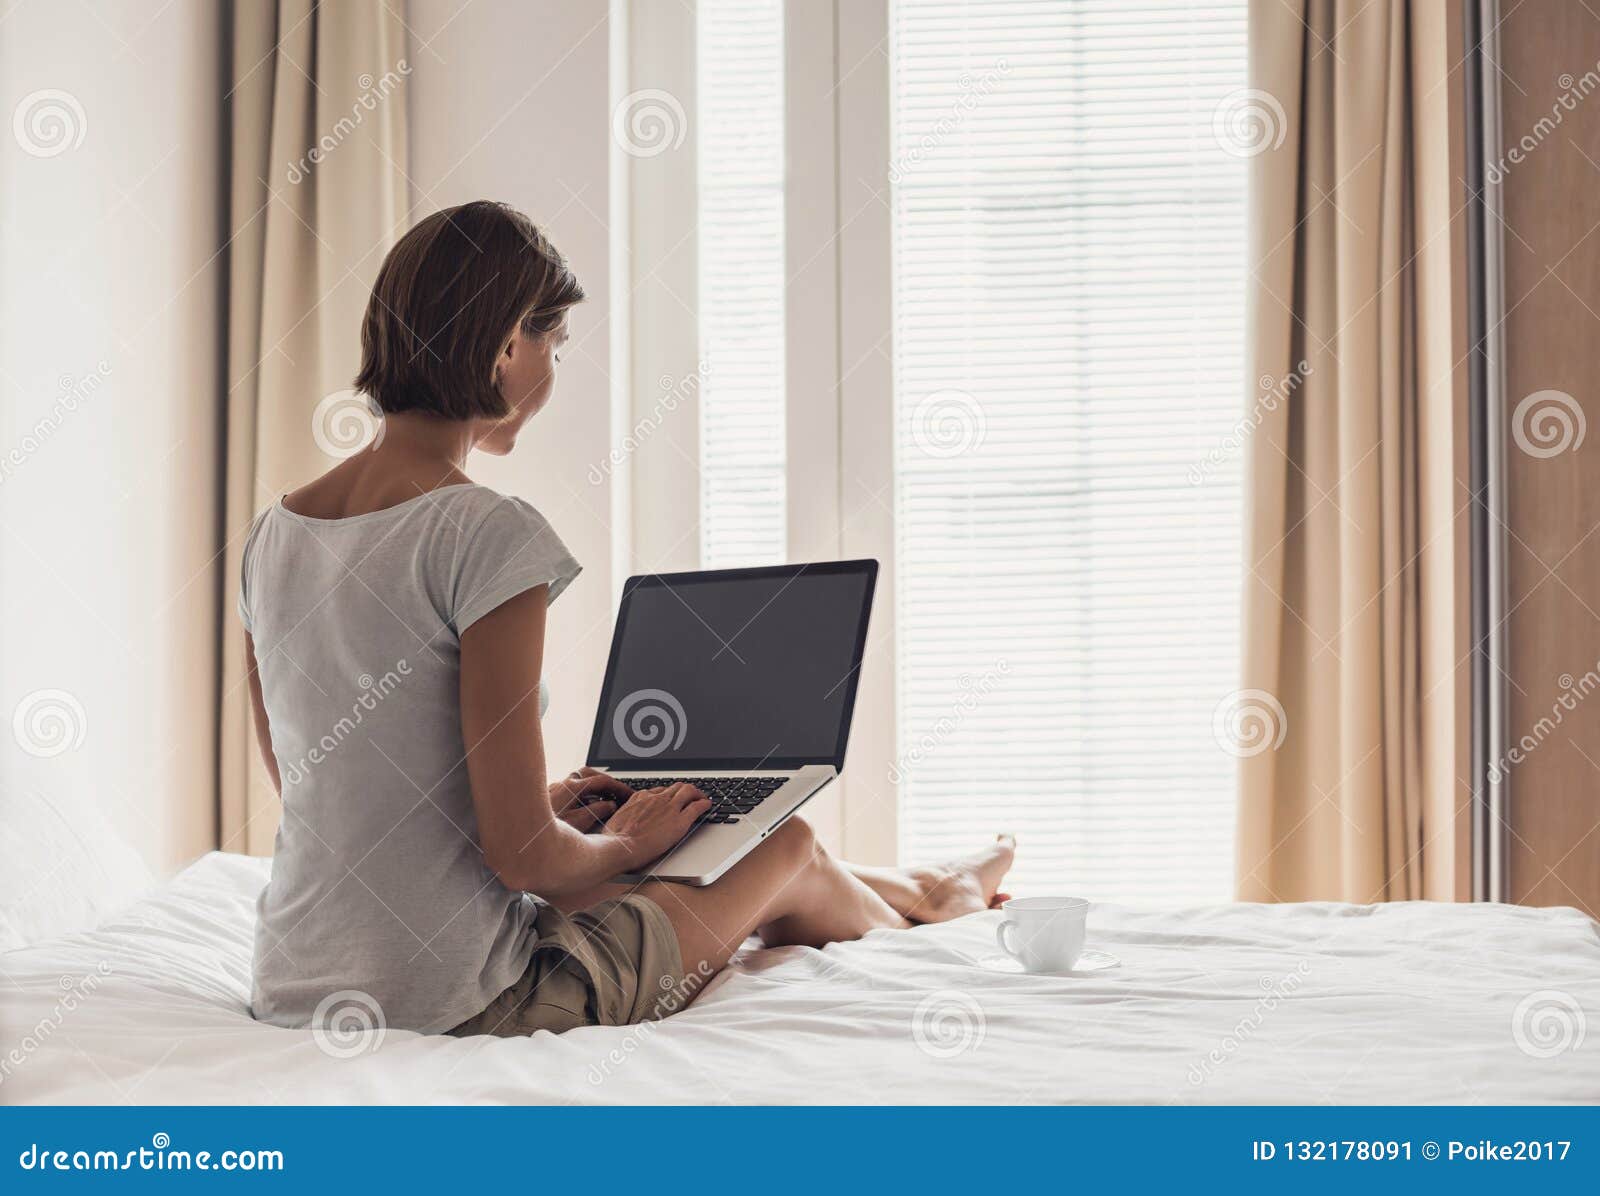 睡在床上的漂亮女人 库存图片. 图片 包括有 查找, 愉快, 女孩, 消息, 移动, 电池, 任命的, 连接数 - 213145931